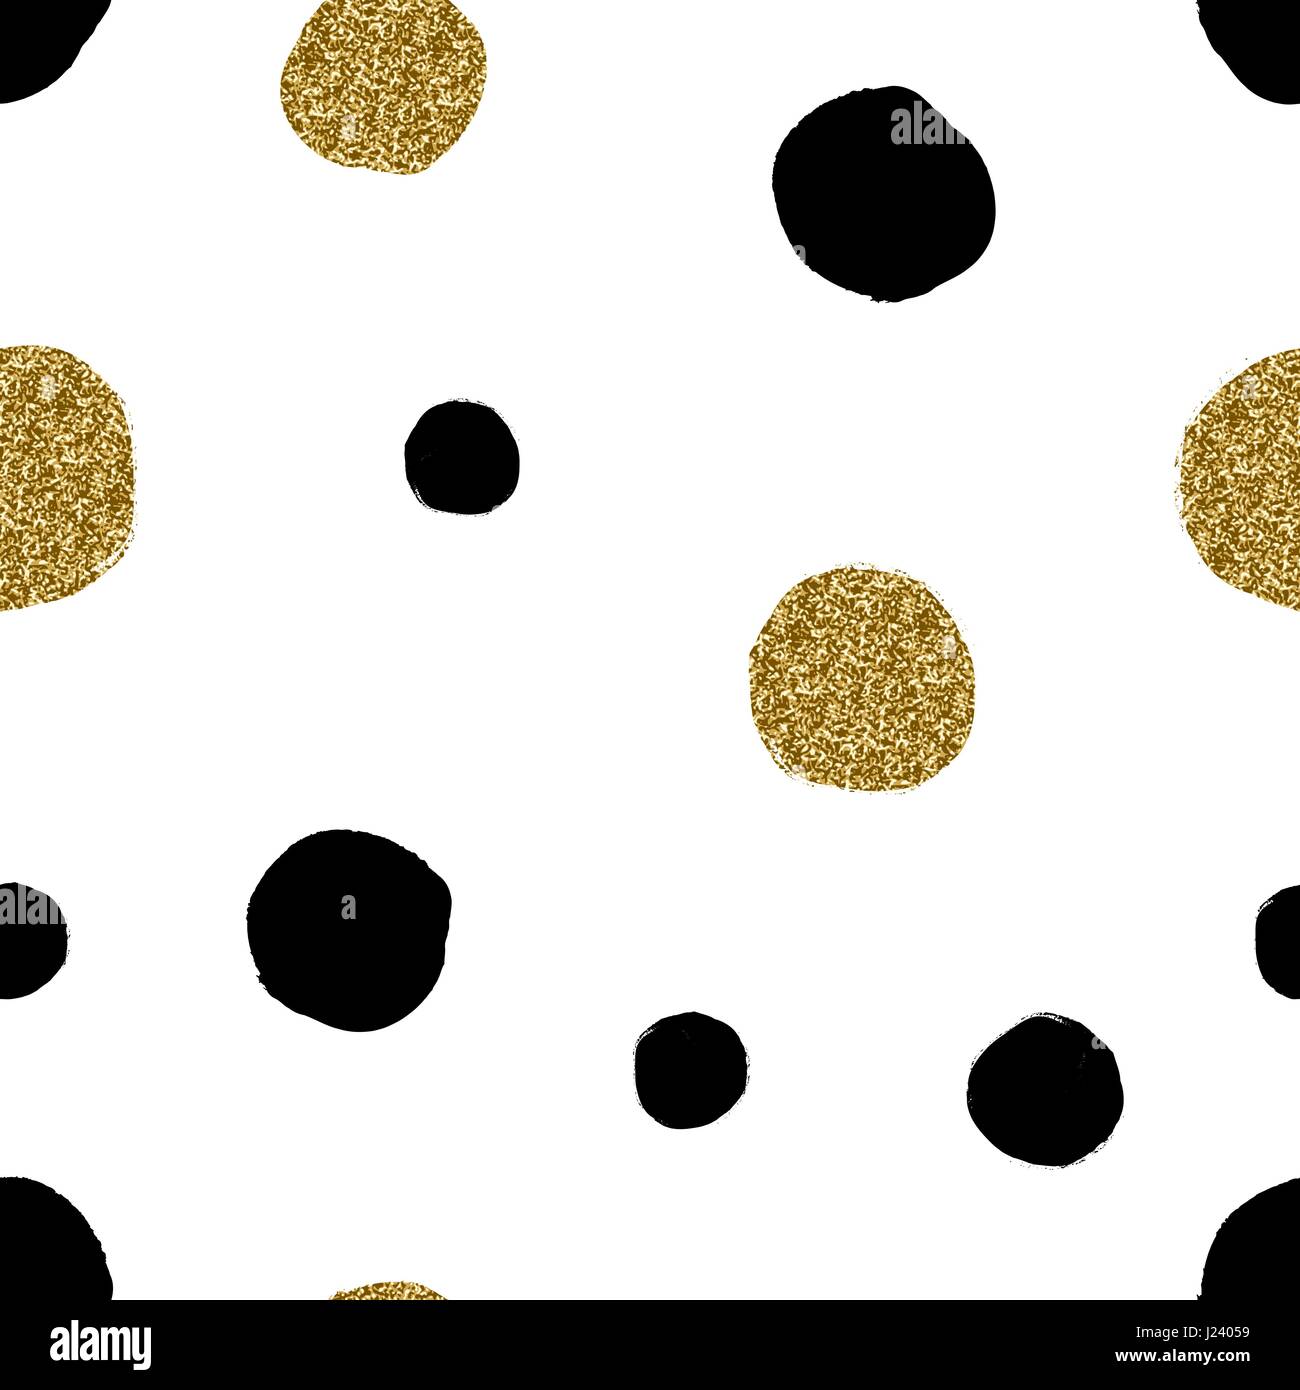 Disegnata a mano perfetta sequenza di ripetizione con forme rotonde in oro glitter e nero su sfondo bianco. Moderna e originale tessile, la carta di avvolgimento, a parete Illustrazione Vettoriale